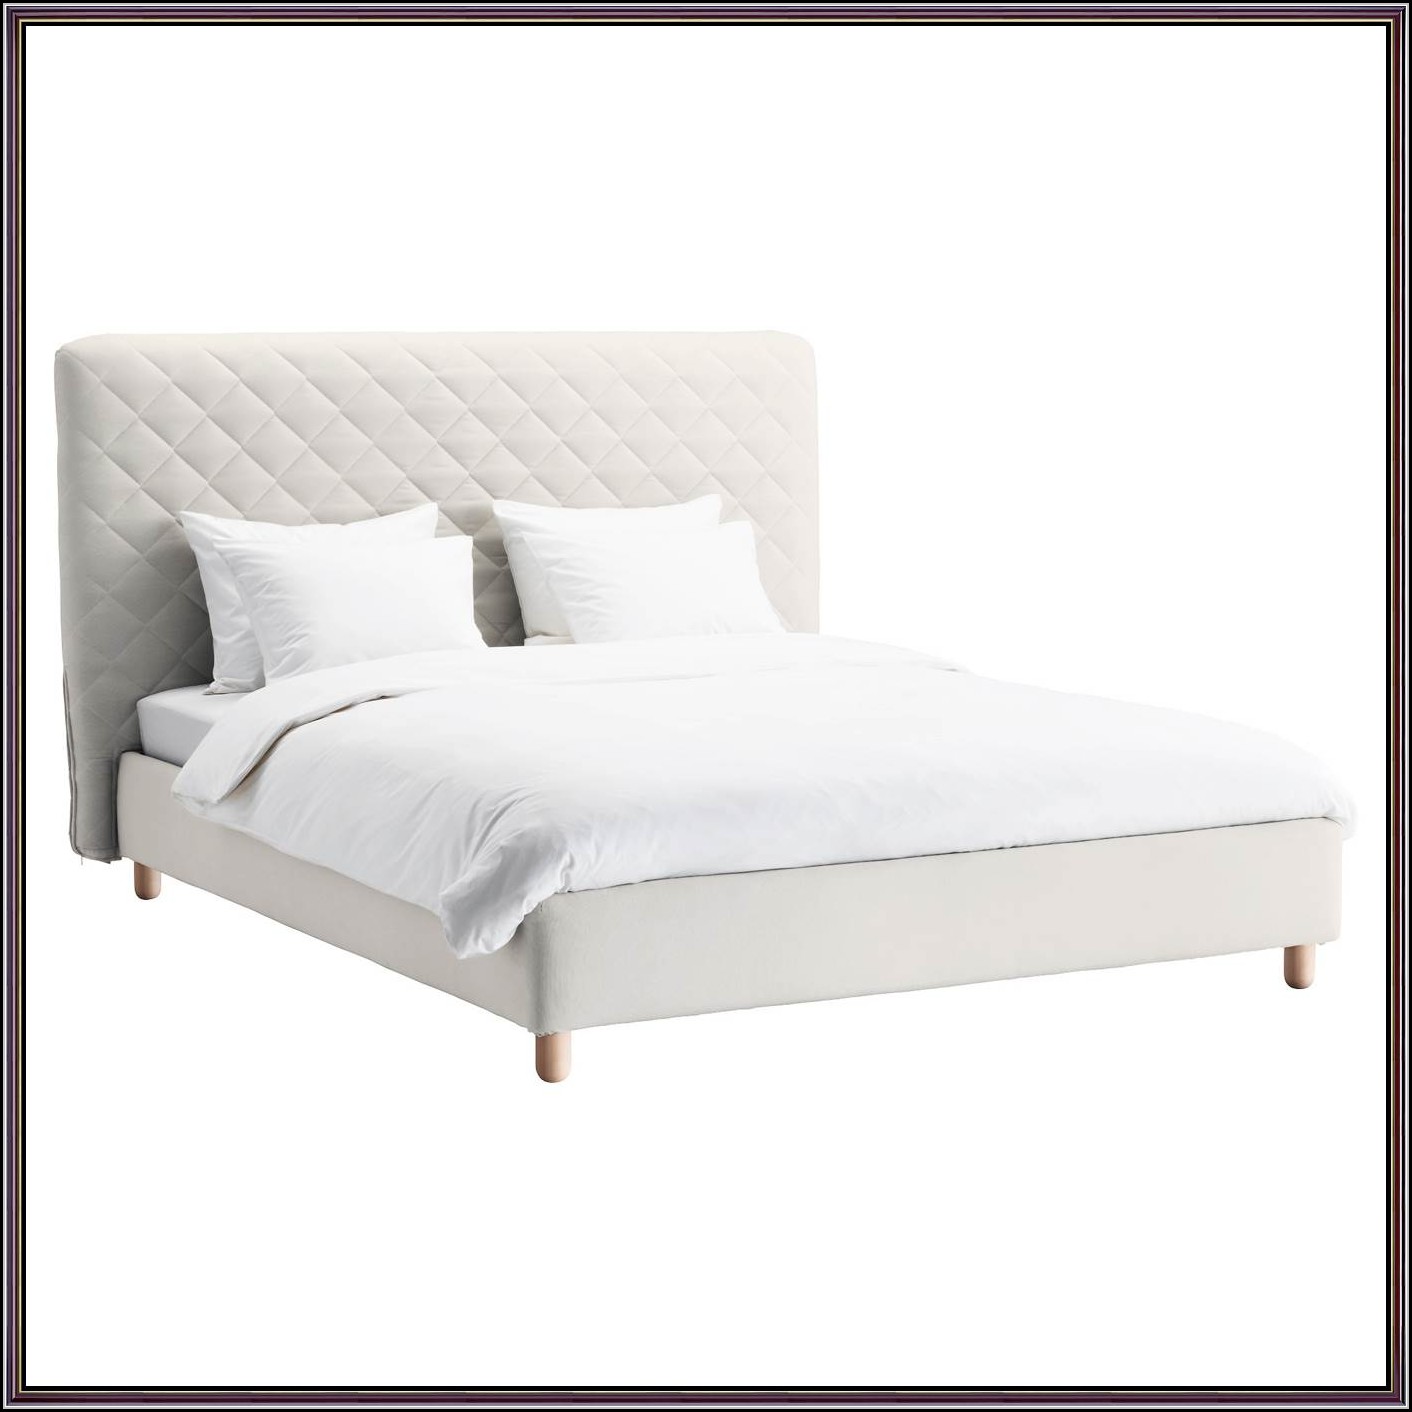 Betten 1 40 Ikea